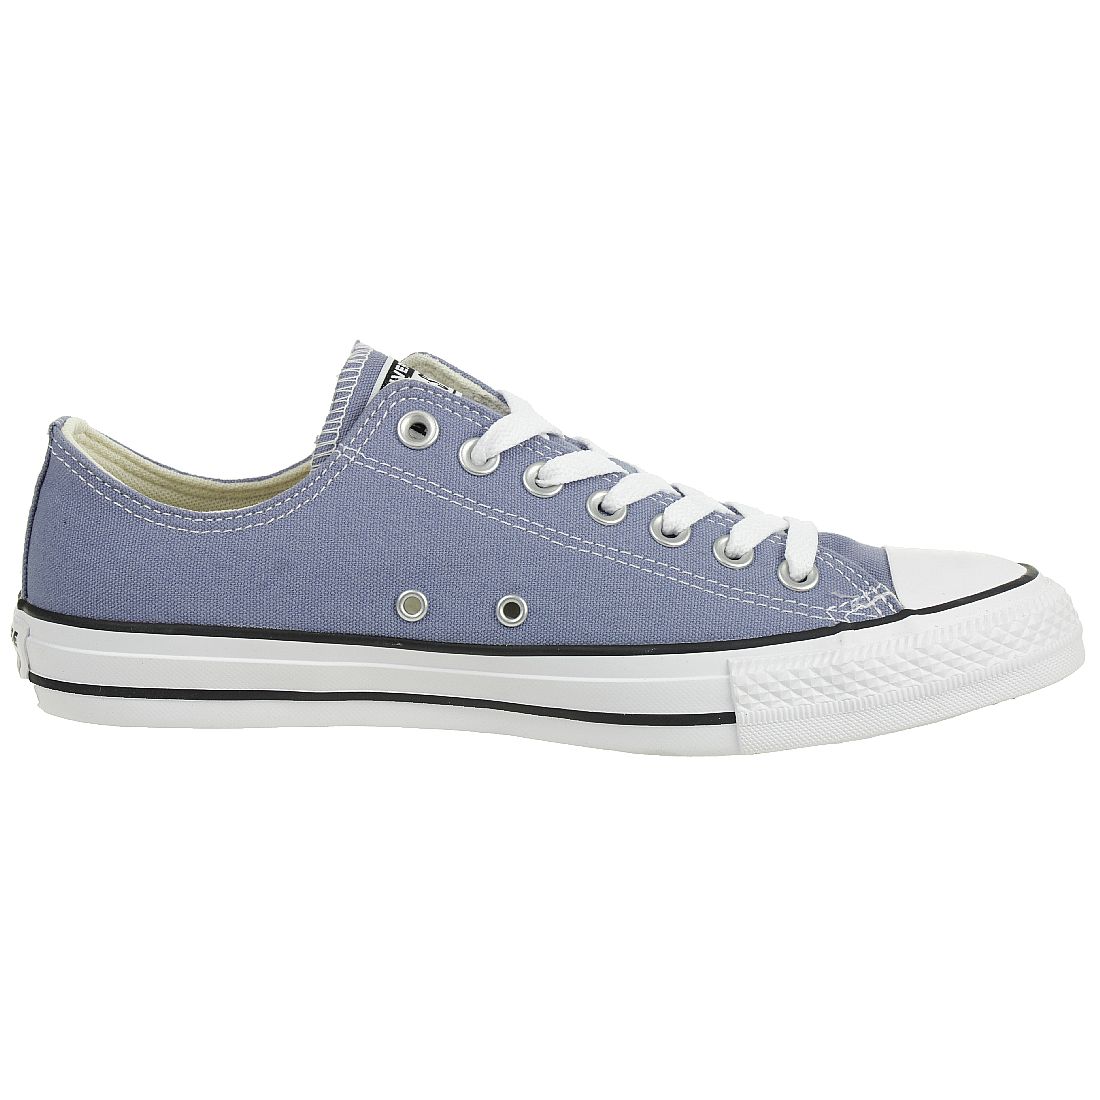 Converse CTAS OX Chuck Schuhe Textil Sneaker blau 164940C 